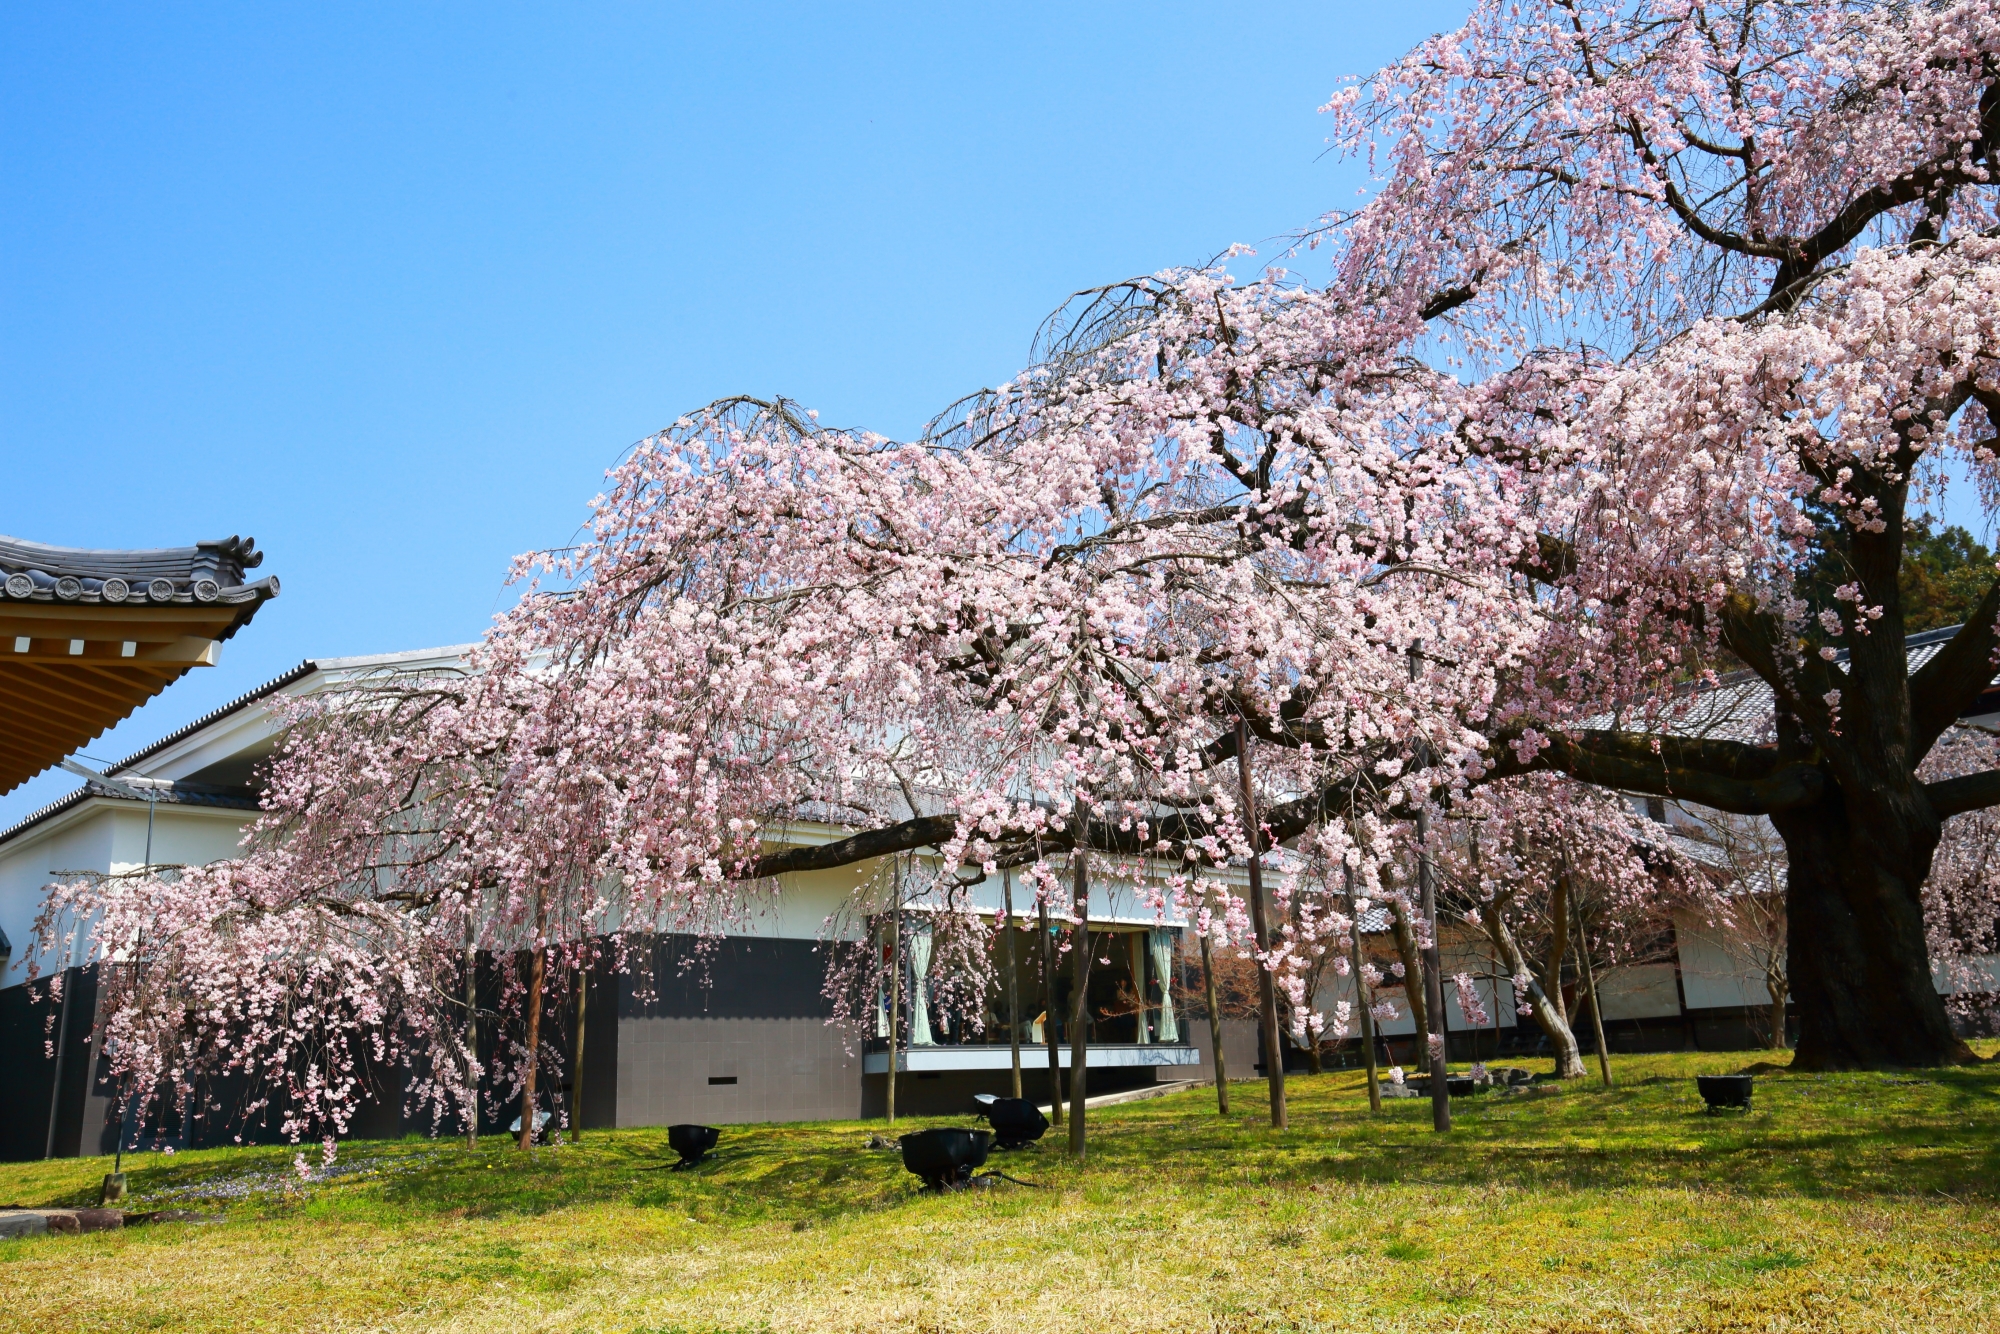 緑の芝生の上で溢れんばかりに咲き乱れる桜